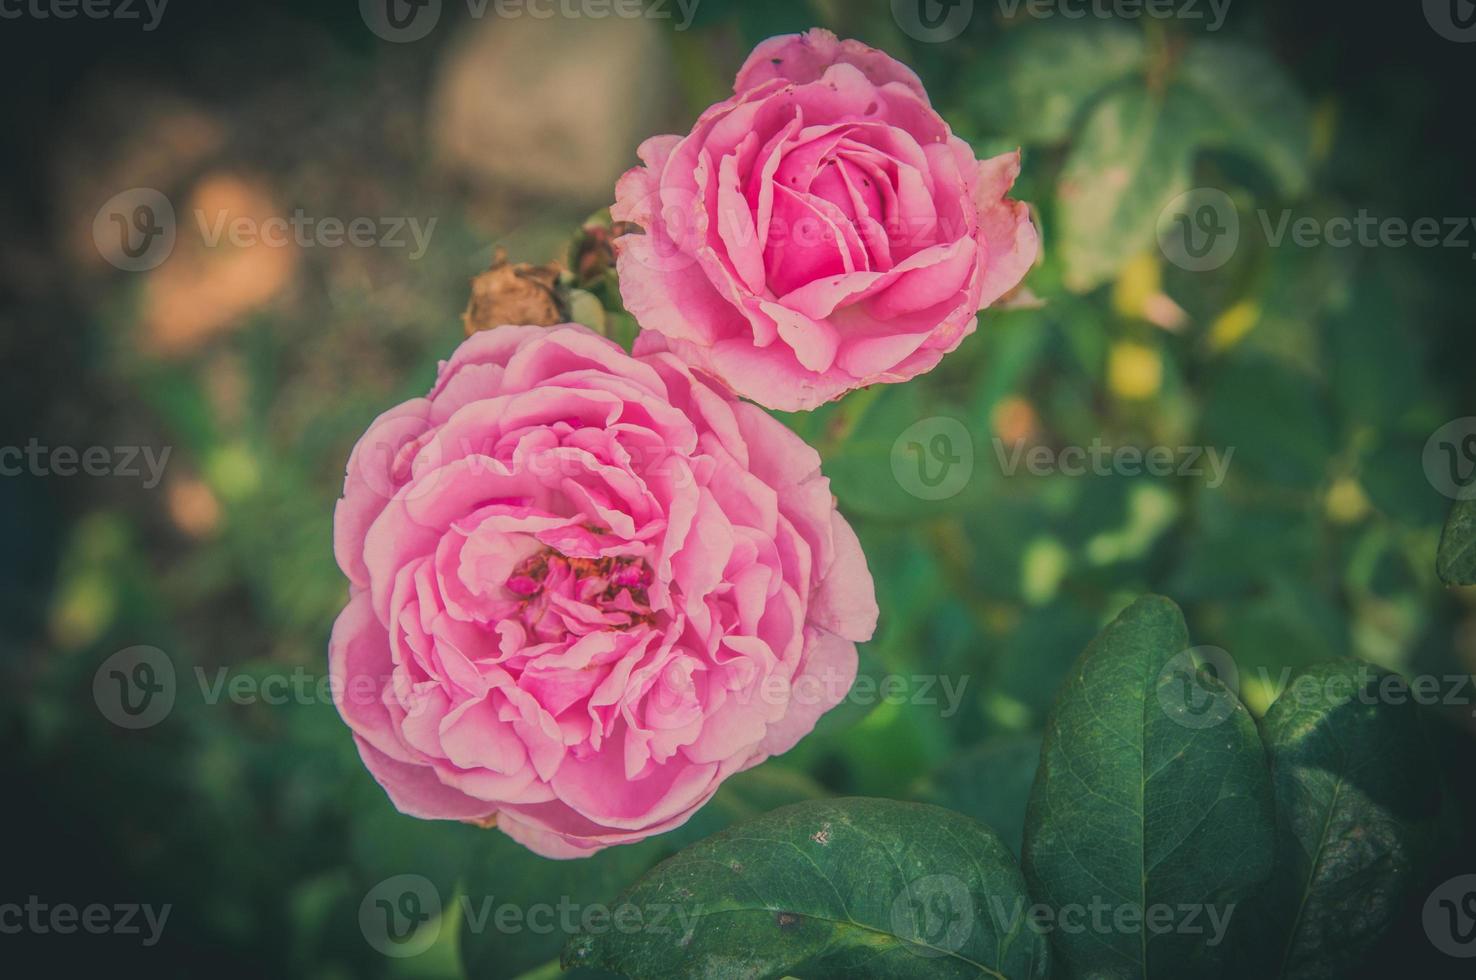 fiori di rosa nel design di toni scuri naturali. l'immagine è l'arte foto